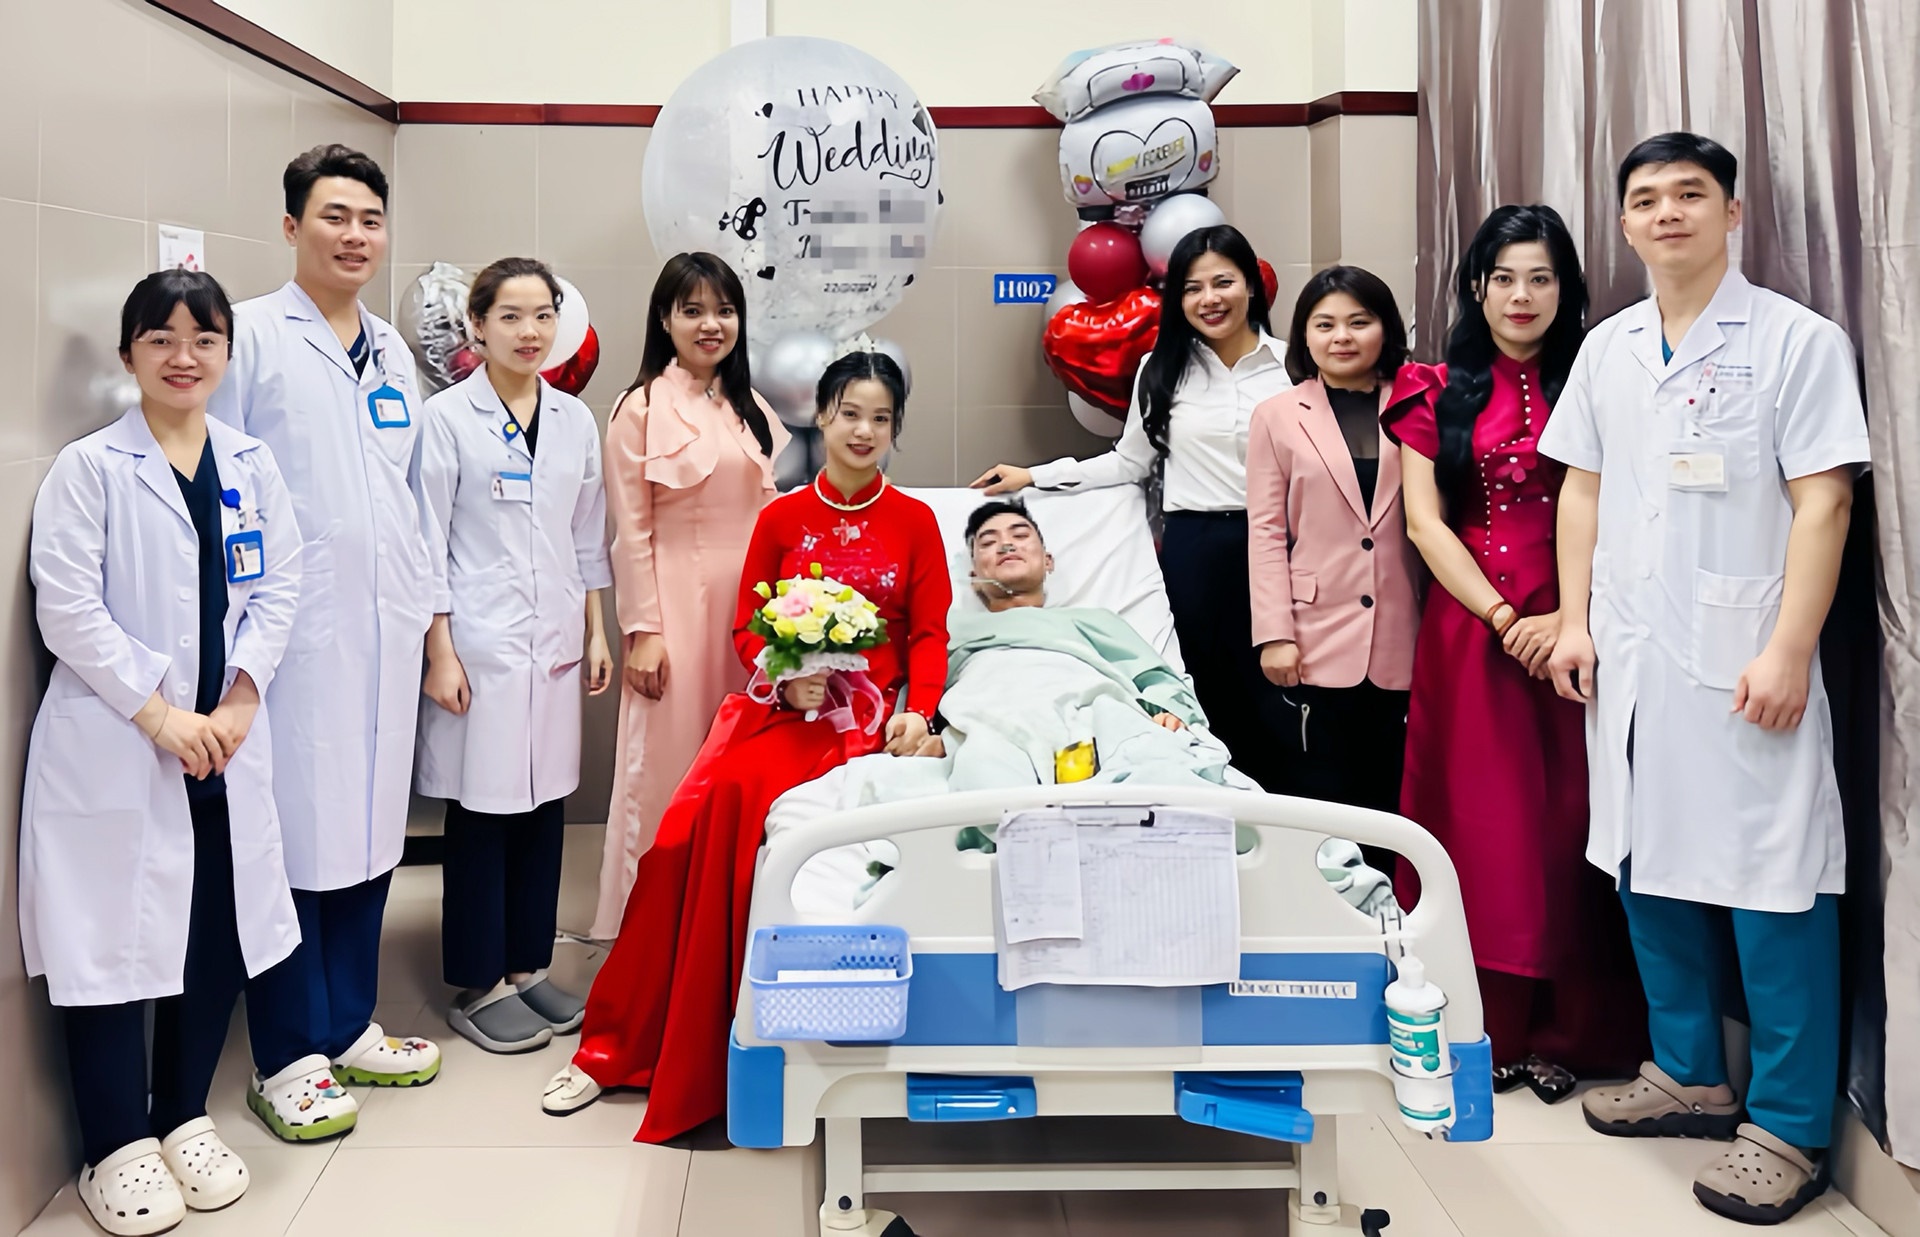  Bệnh viện Đa khoa tỉnh Lạng Sơn tổ chức lễ cưới cho cặp đôi - Ảnh: Vietnamnet